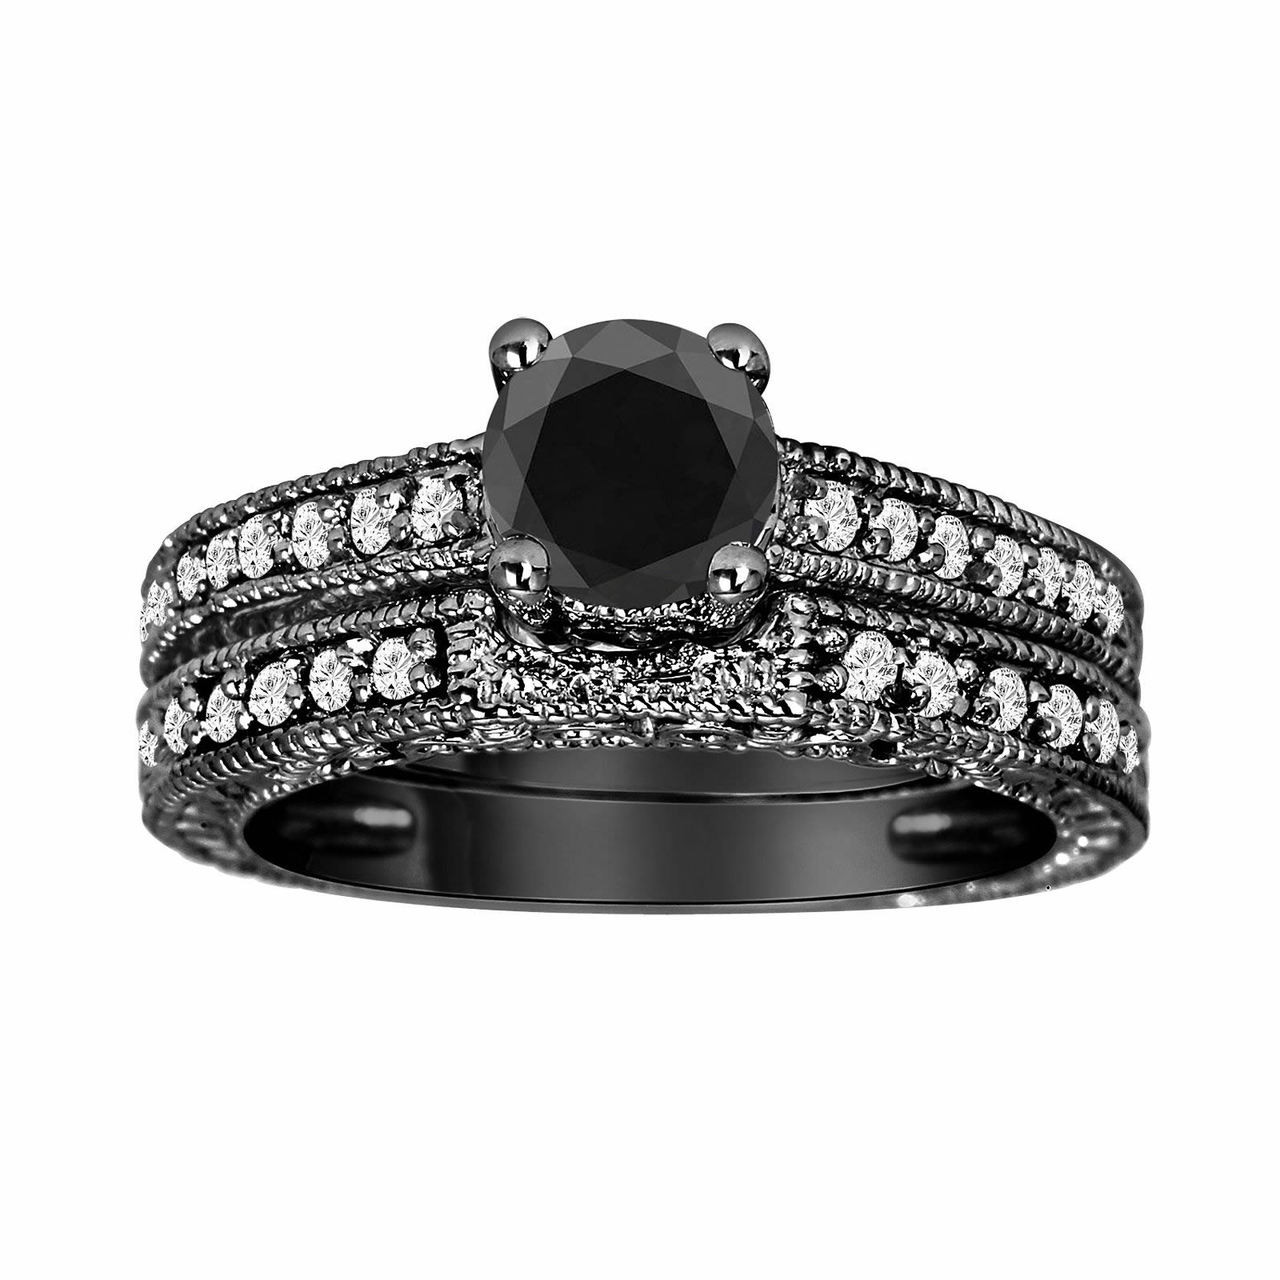 I Do Wedding Rings- 1.5ct Round Cut Diamond Skull Wedding Rings in 14k  White Gold and Black Enamel from Black Diamonds New York